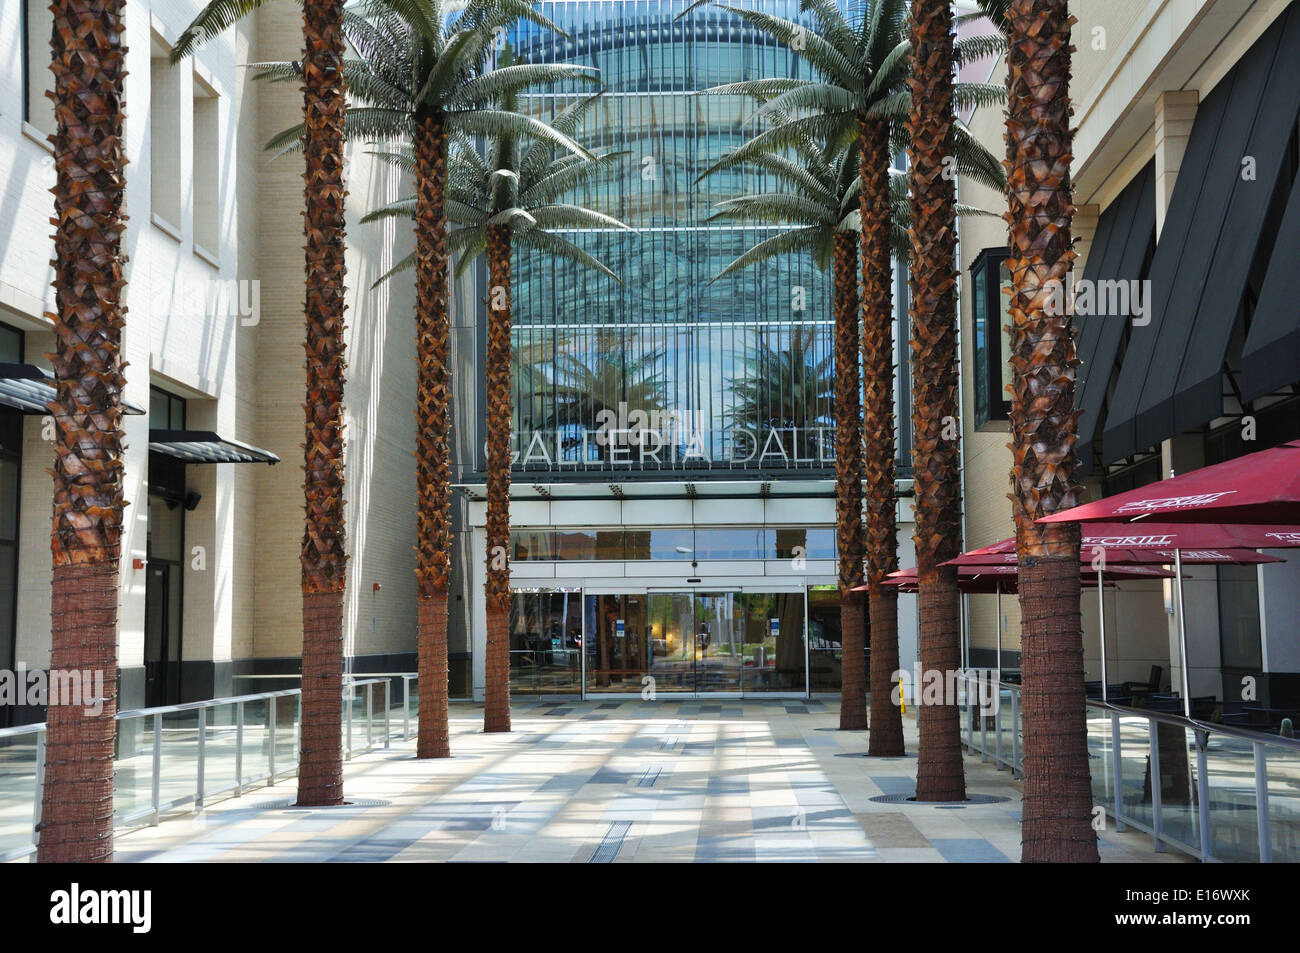 Galleria shopping mall Dallas, Texas, USA Stock Photo